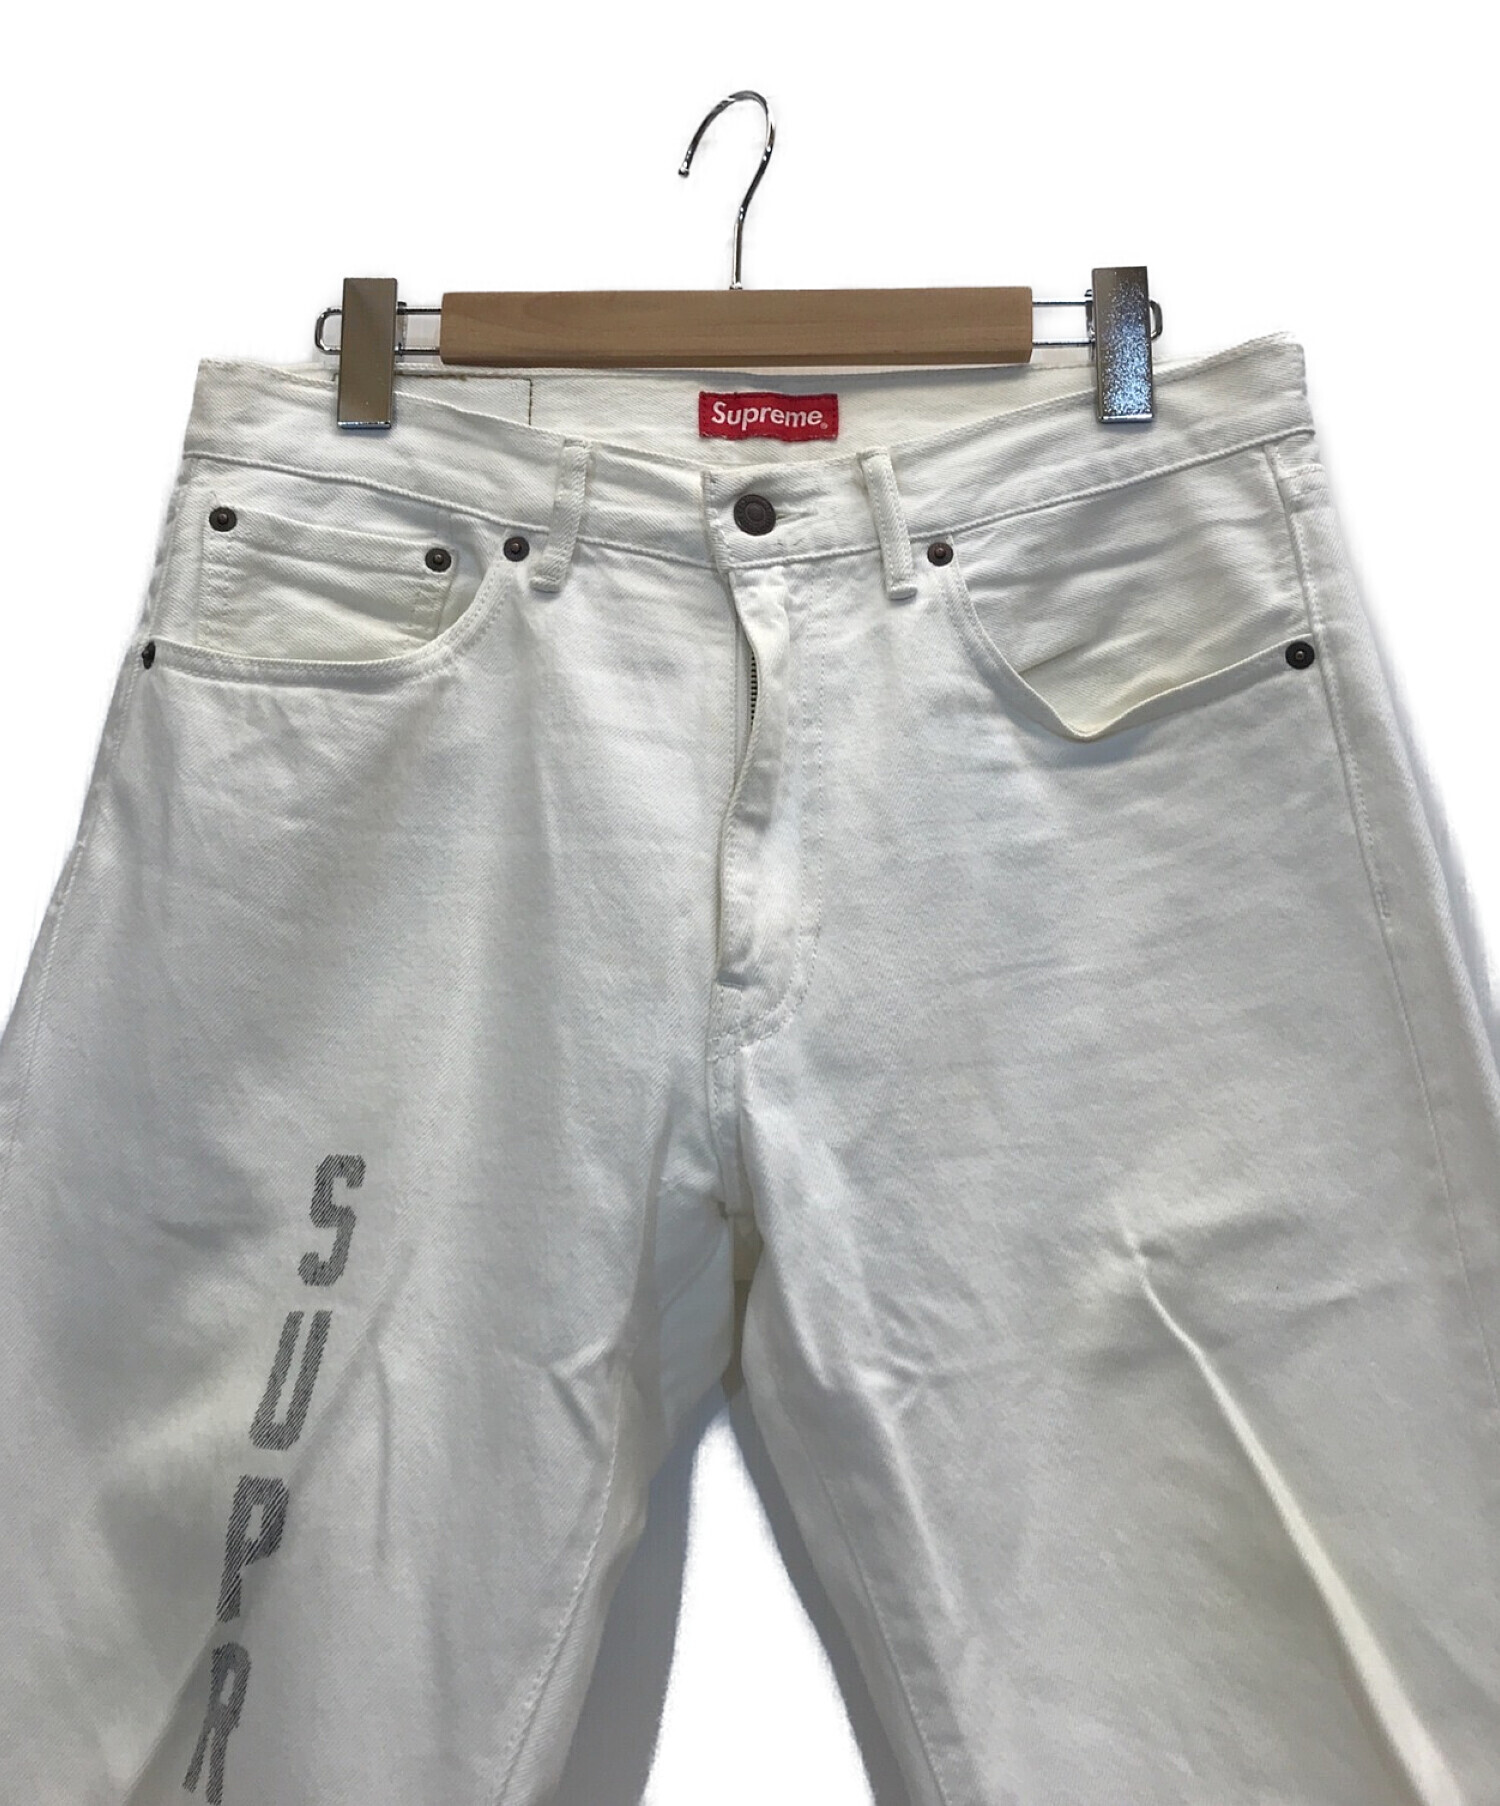 Supreme×LEVIS (シュプリーム×リーバイス) 17SS Washed 505 Jeans コラボウォッシュド505デニムパンツ ホワイト  サイズ:32